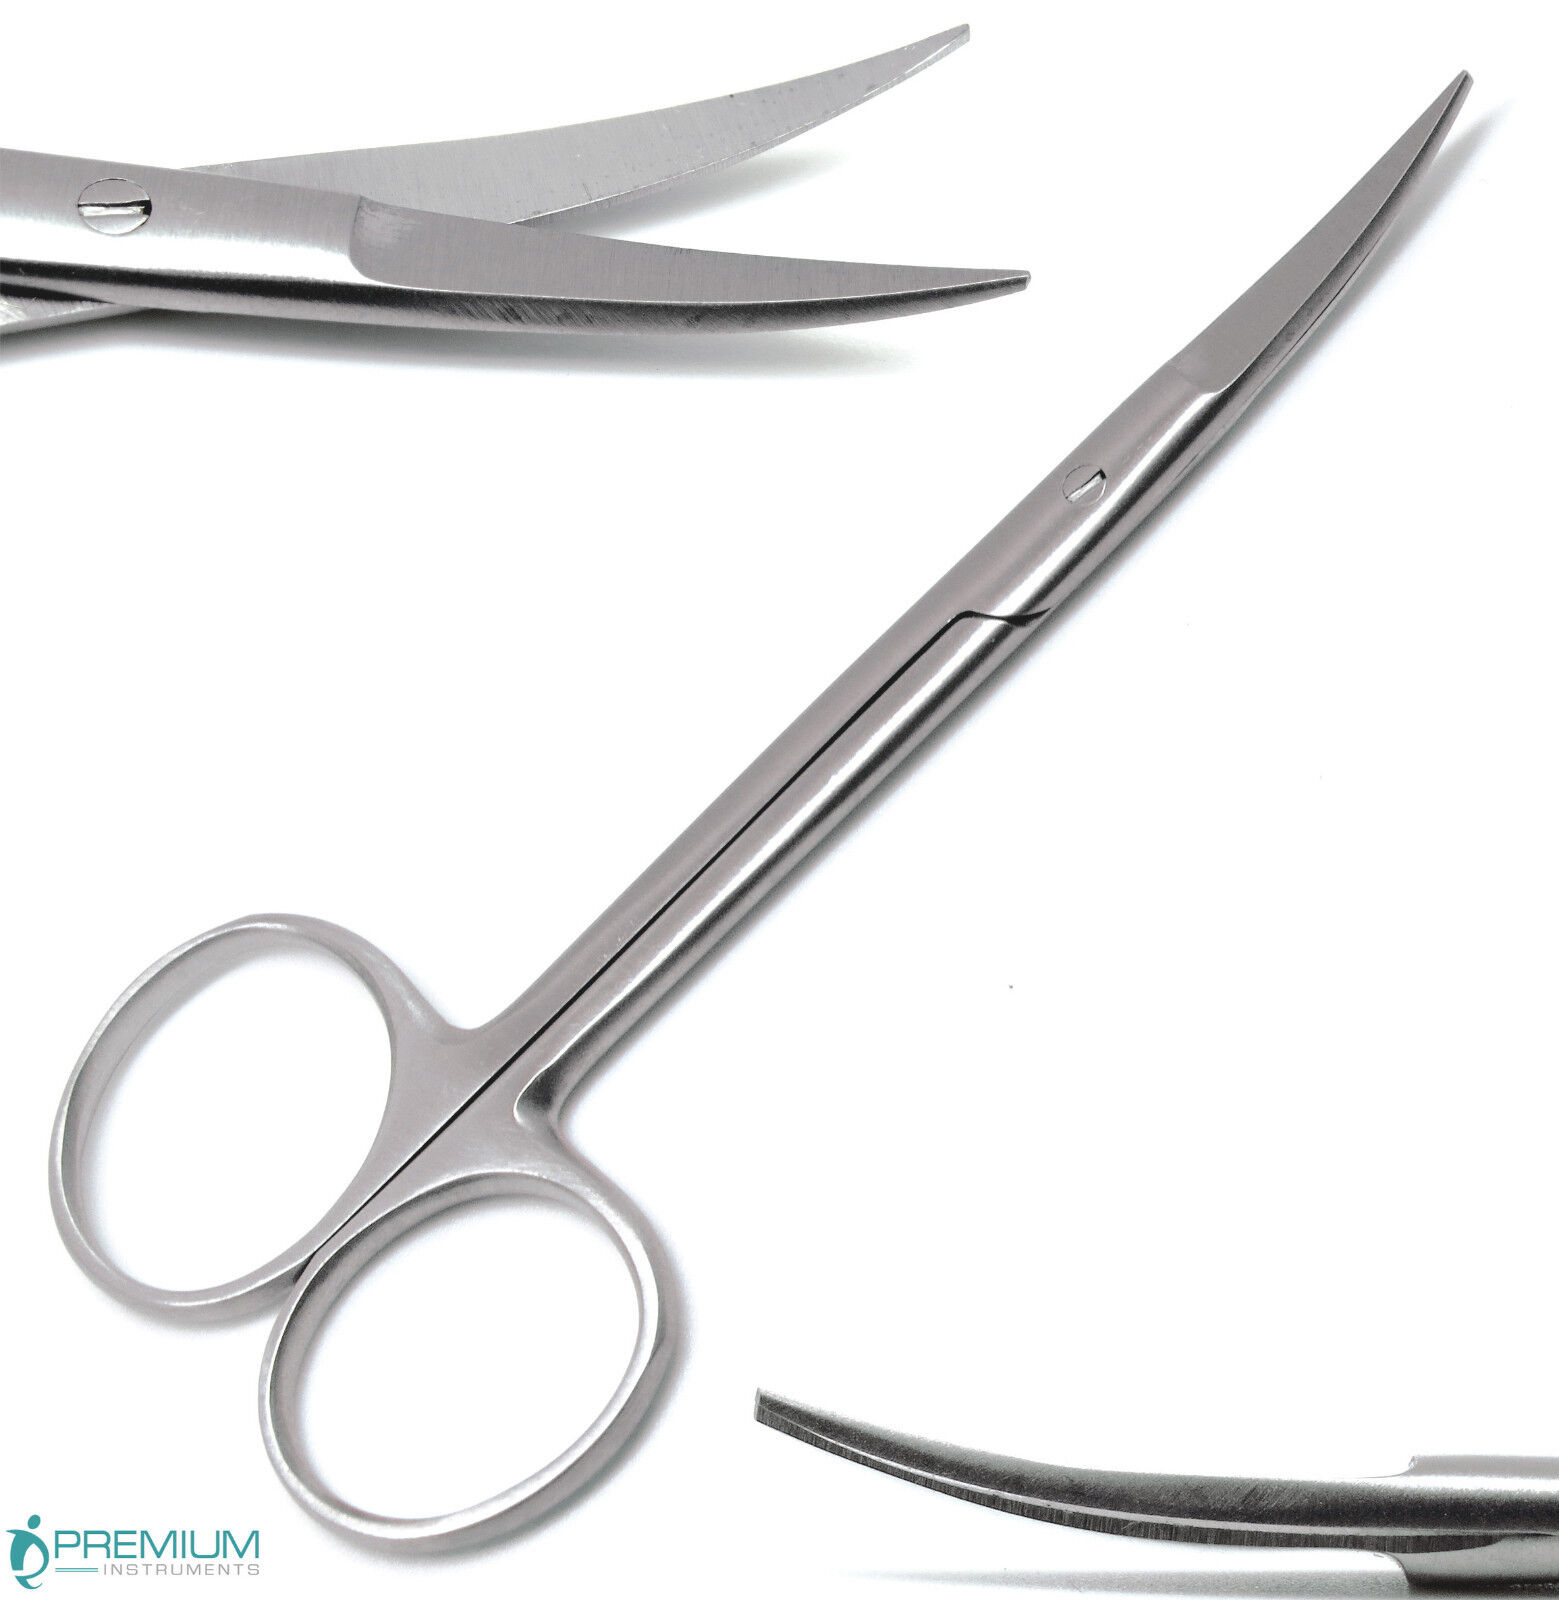 Premium Iris Scissors Curved 4.5